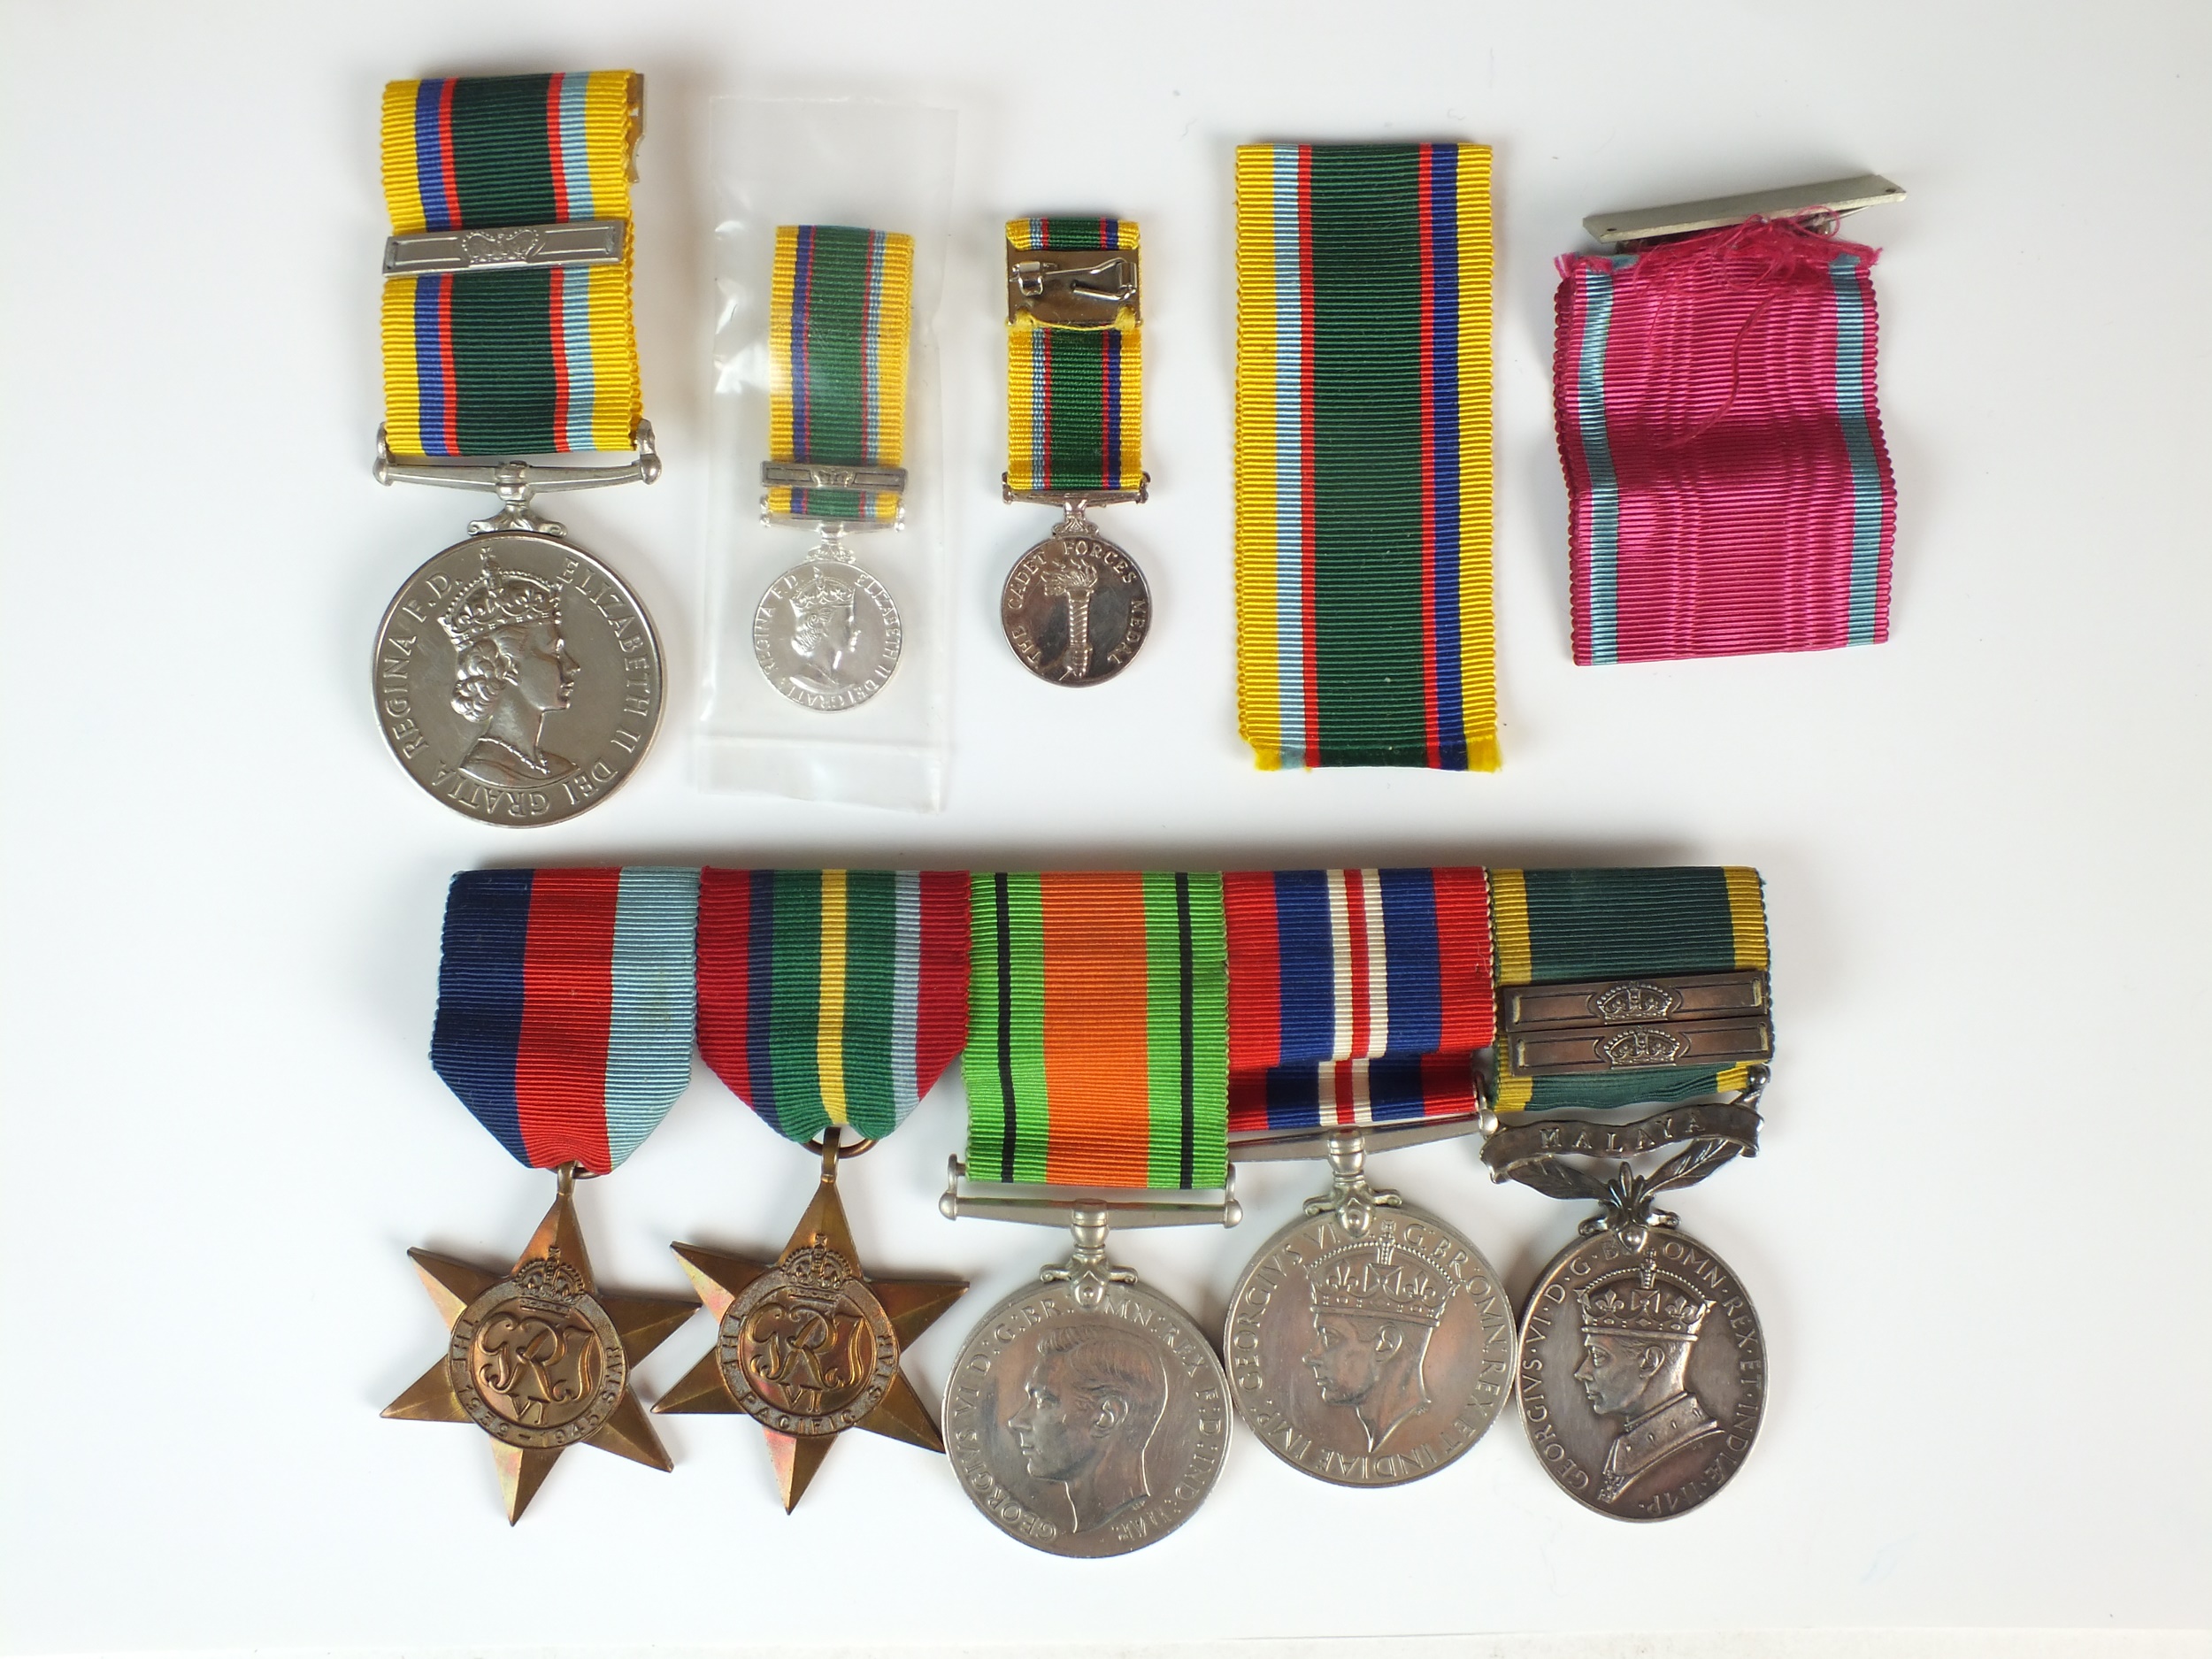 WW2 Prisoner of War Medal group